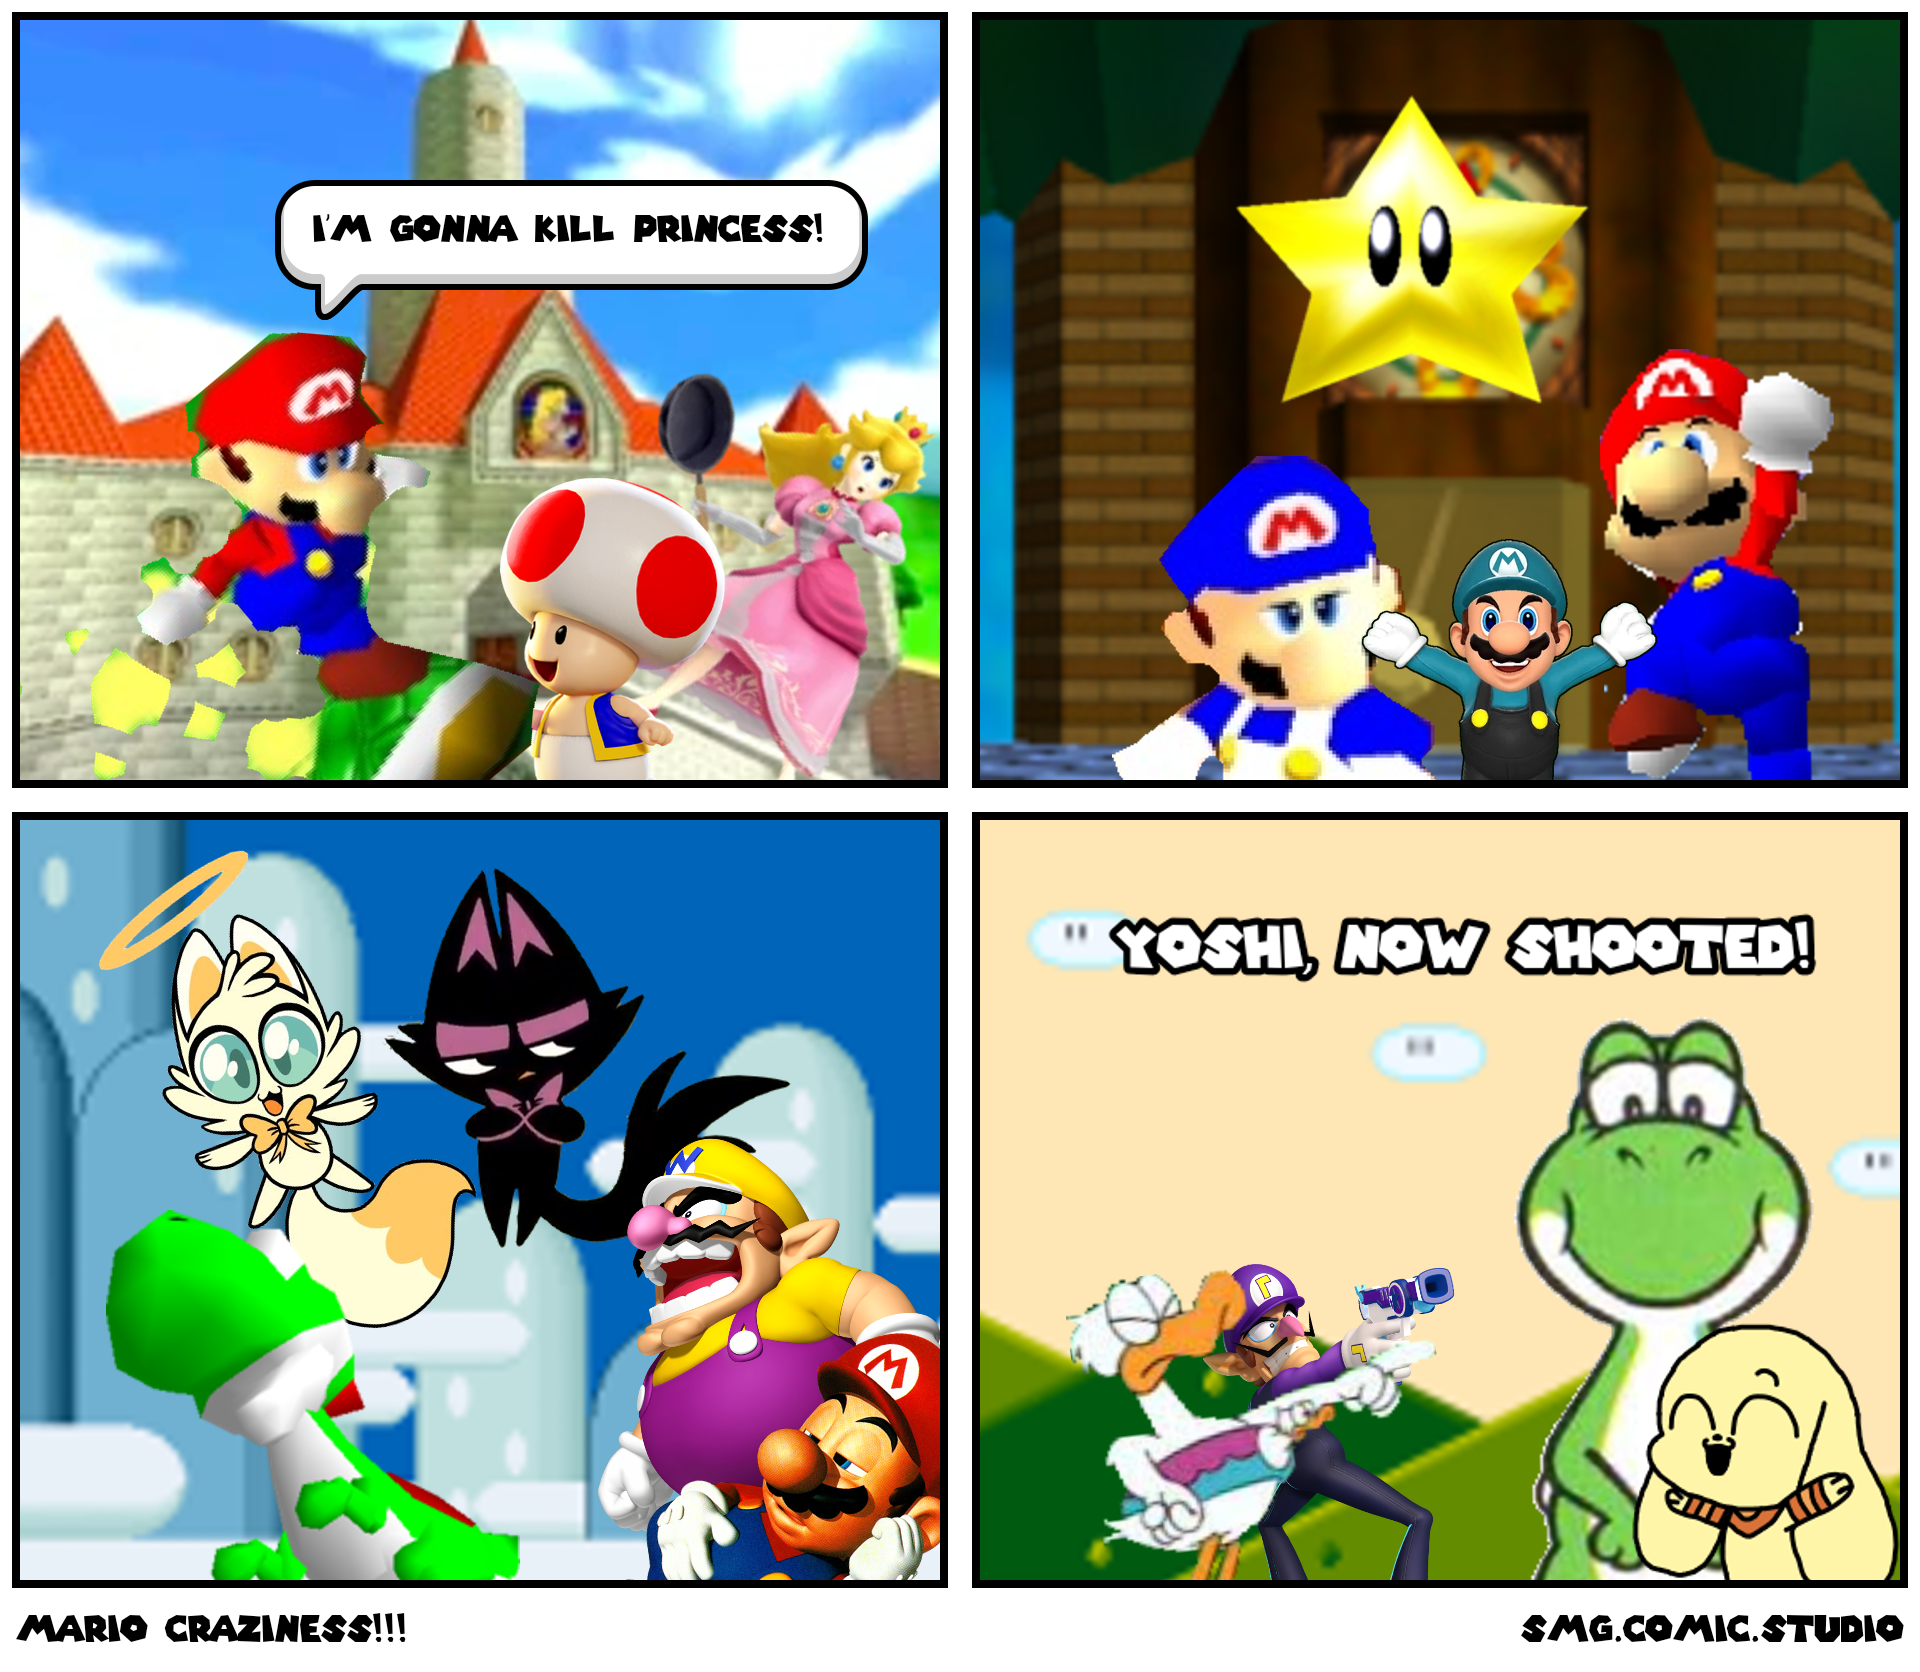 Mario Craziness!!!